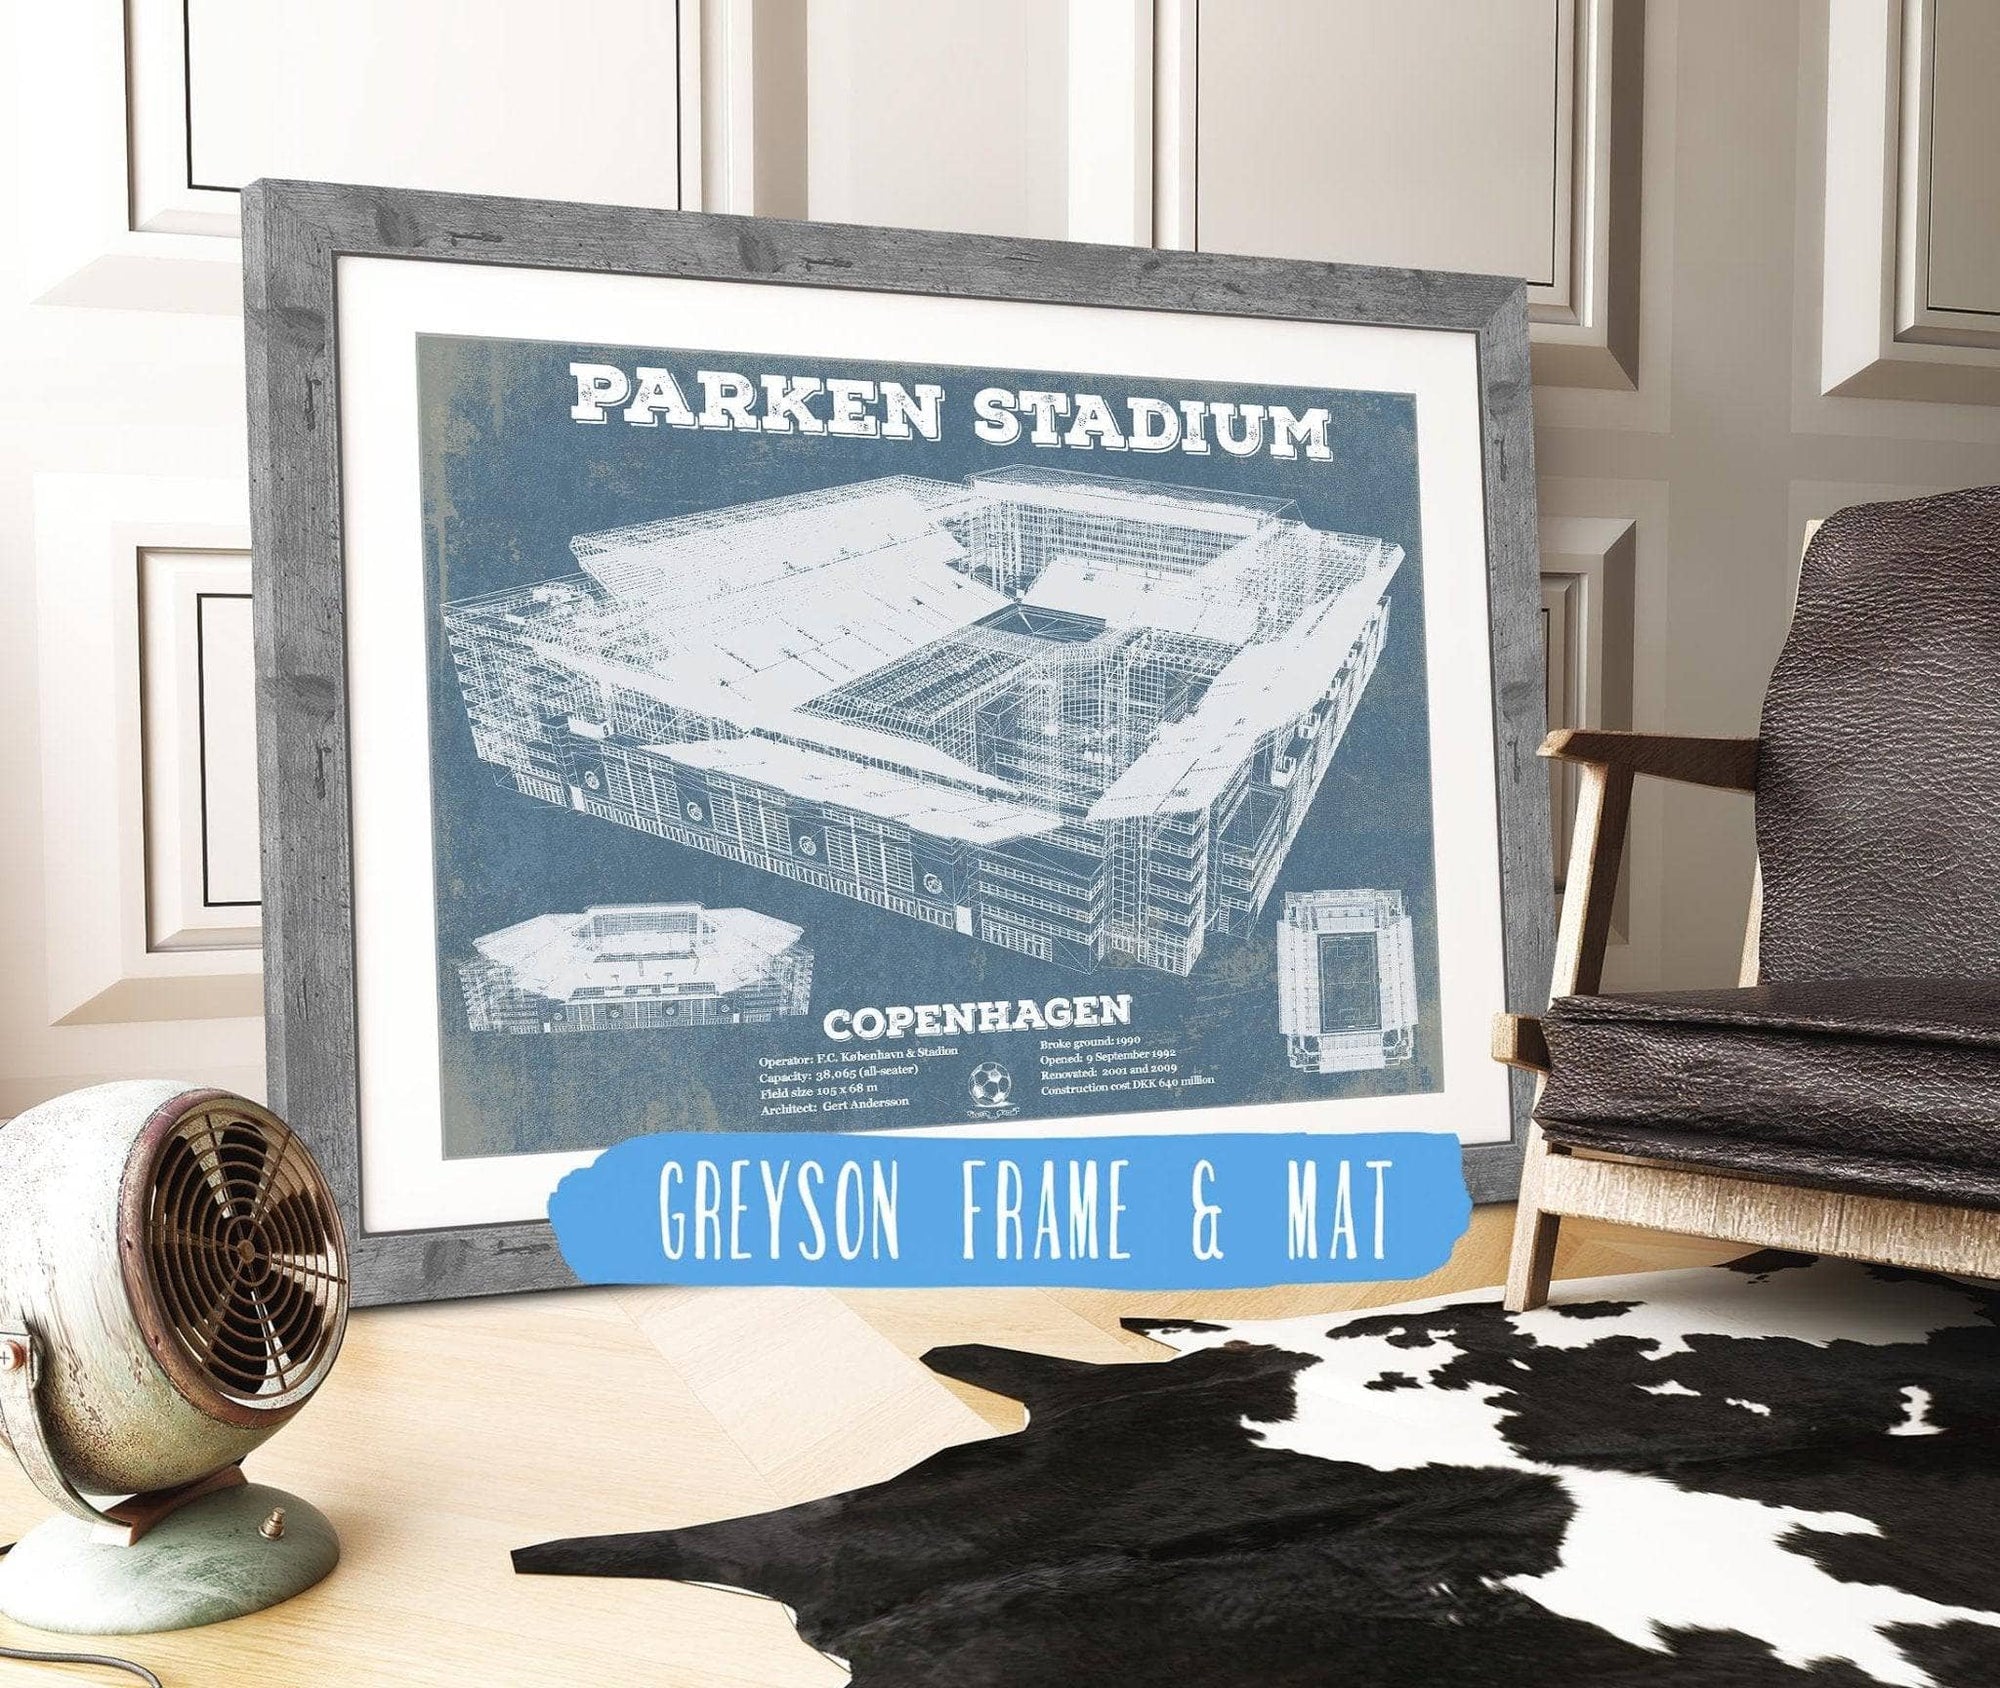 Cutler West Soccer Collection 14" x 11" / Greyson Frame & Mat Parken Stadium Copenhagen Football Vintage Soccer Print 835000034_69511